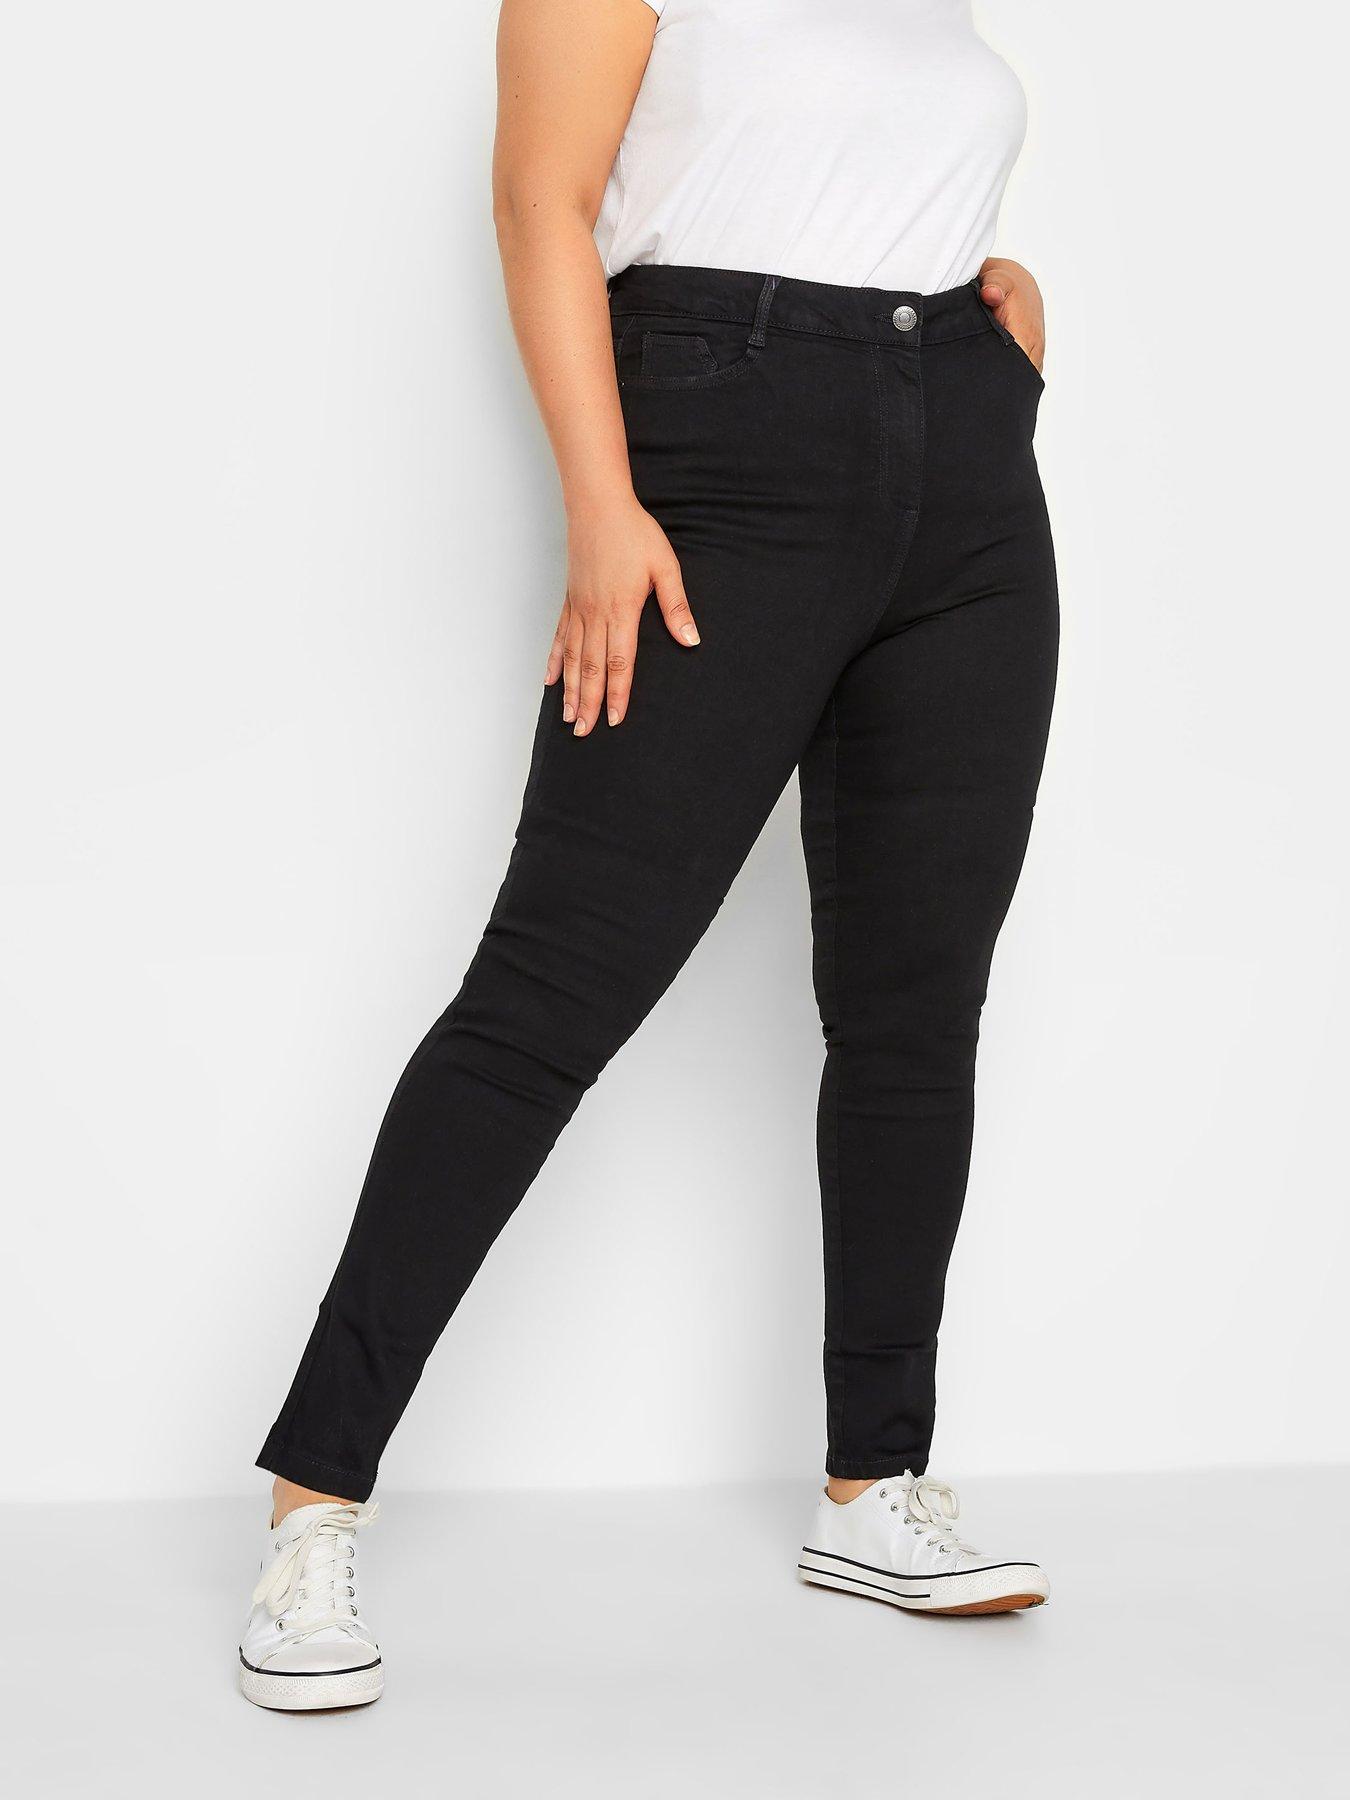 Lucky Brand Pants Women's Size 4 X 27 Black Ava Super Skinny Velvet  Mid-Rise.